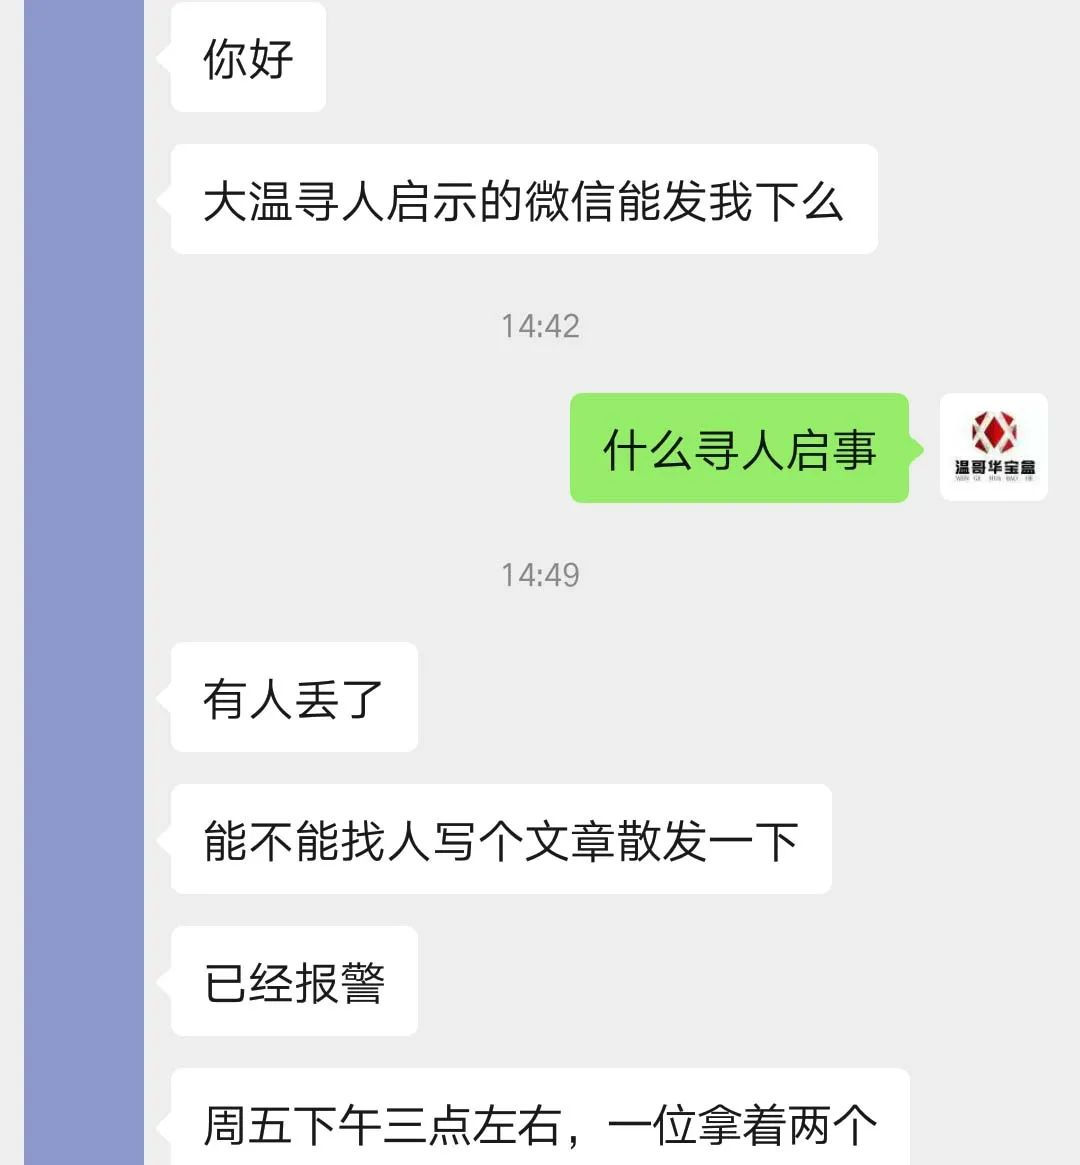 紧急找人 一名香港女士 不会英语 在大统华附近失联 加拿大头条 百事通华人资讯网 全球华人信息分享交流平台in77 Com